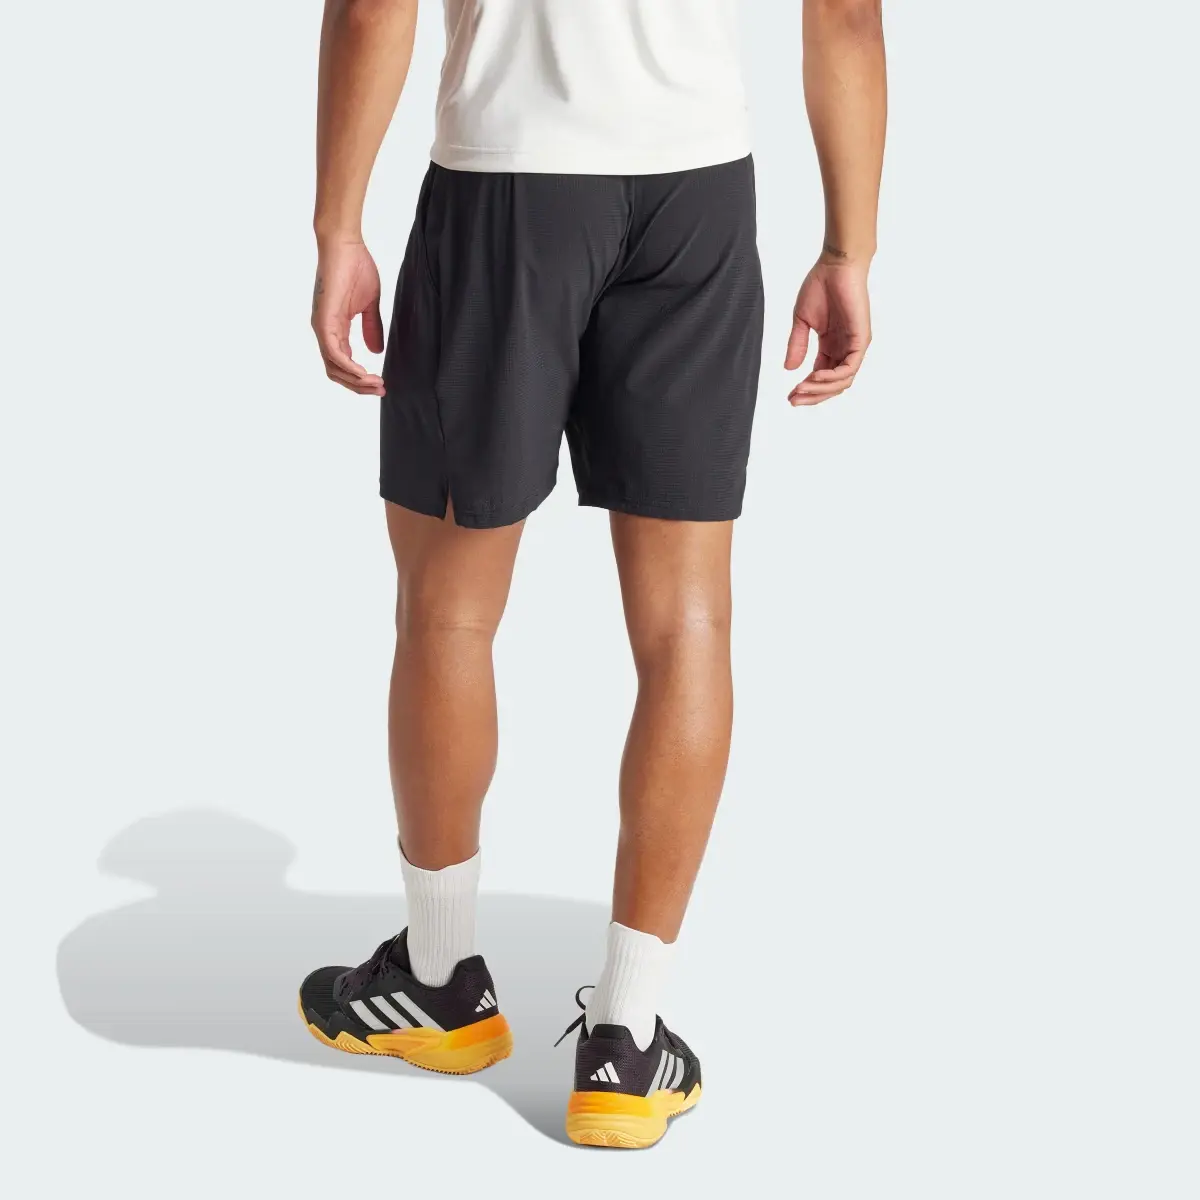 Adidas Tennis Ergo Shorts. 3